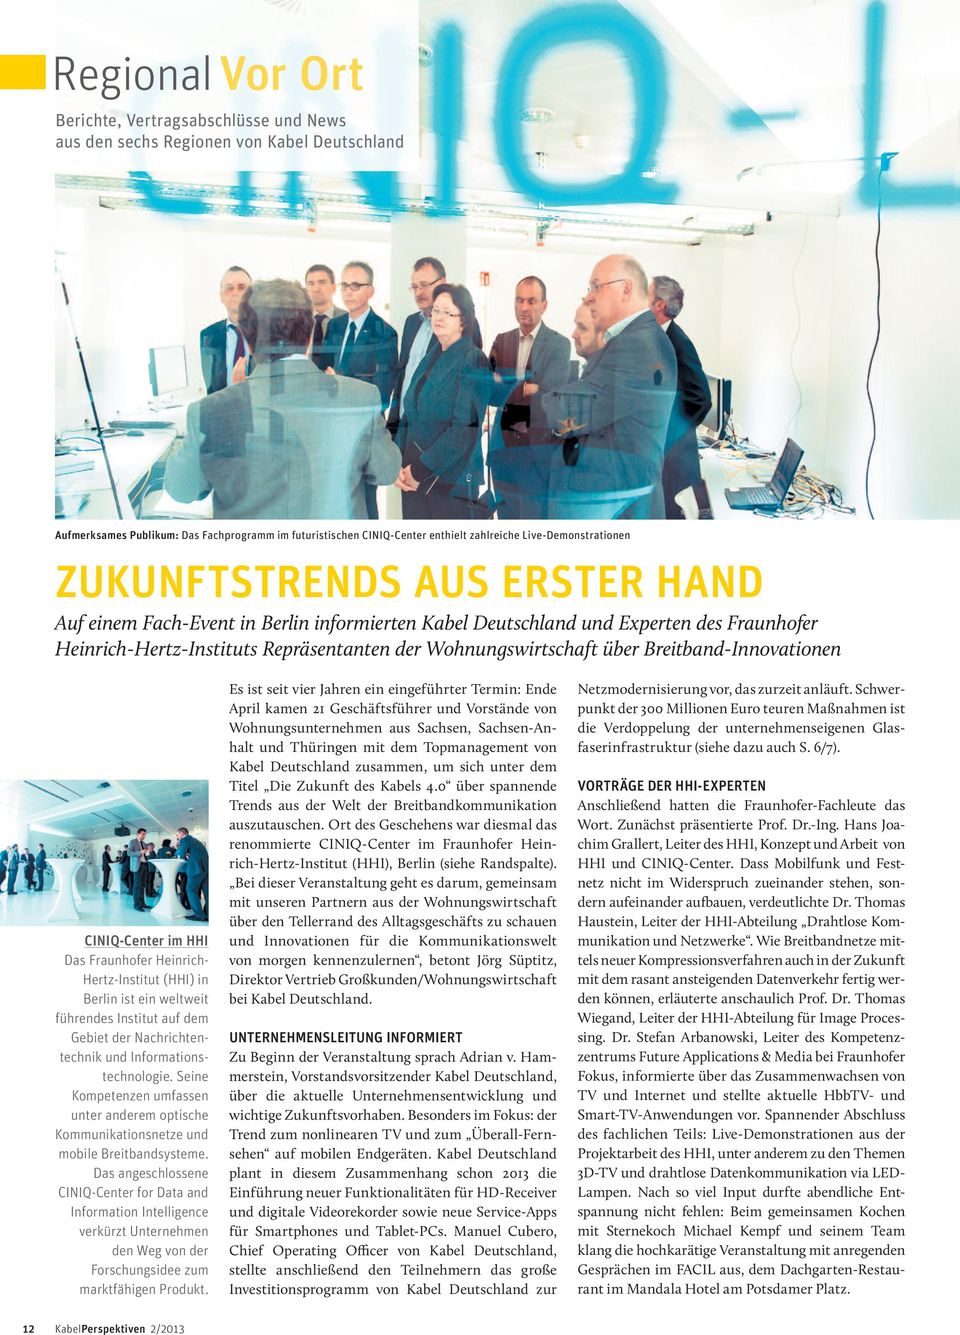 Wohnungswirtschaft über Breitband-Innovationen CiniQ-Center im hhi Das Fraunhofer Heinrich- Hertz-Institut (HHI) in Berlin ist ein weltweit führendes Institut auf dem Gebiet der Nachrichtentechnik